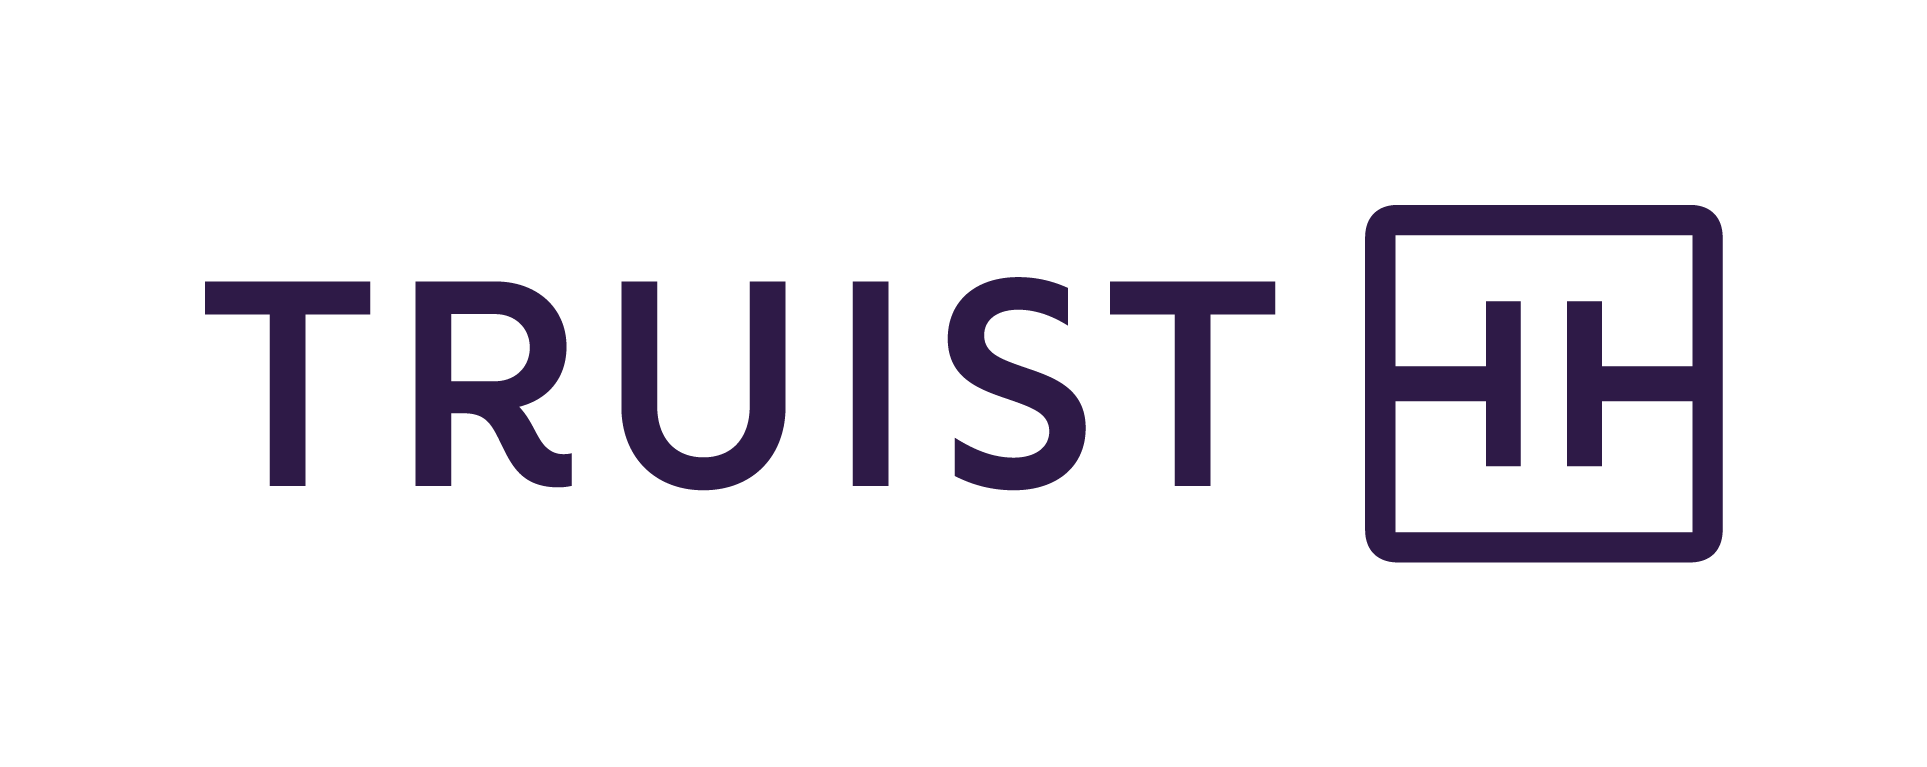 SunTrust - Now Truist